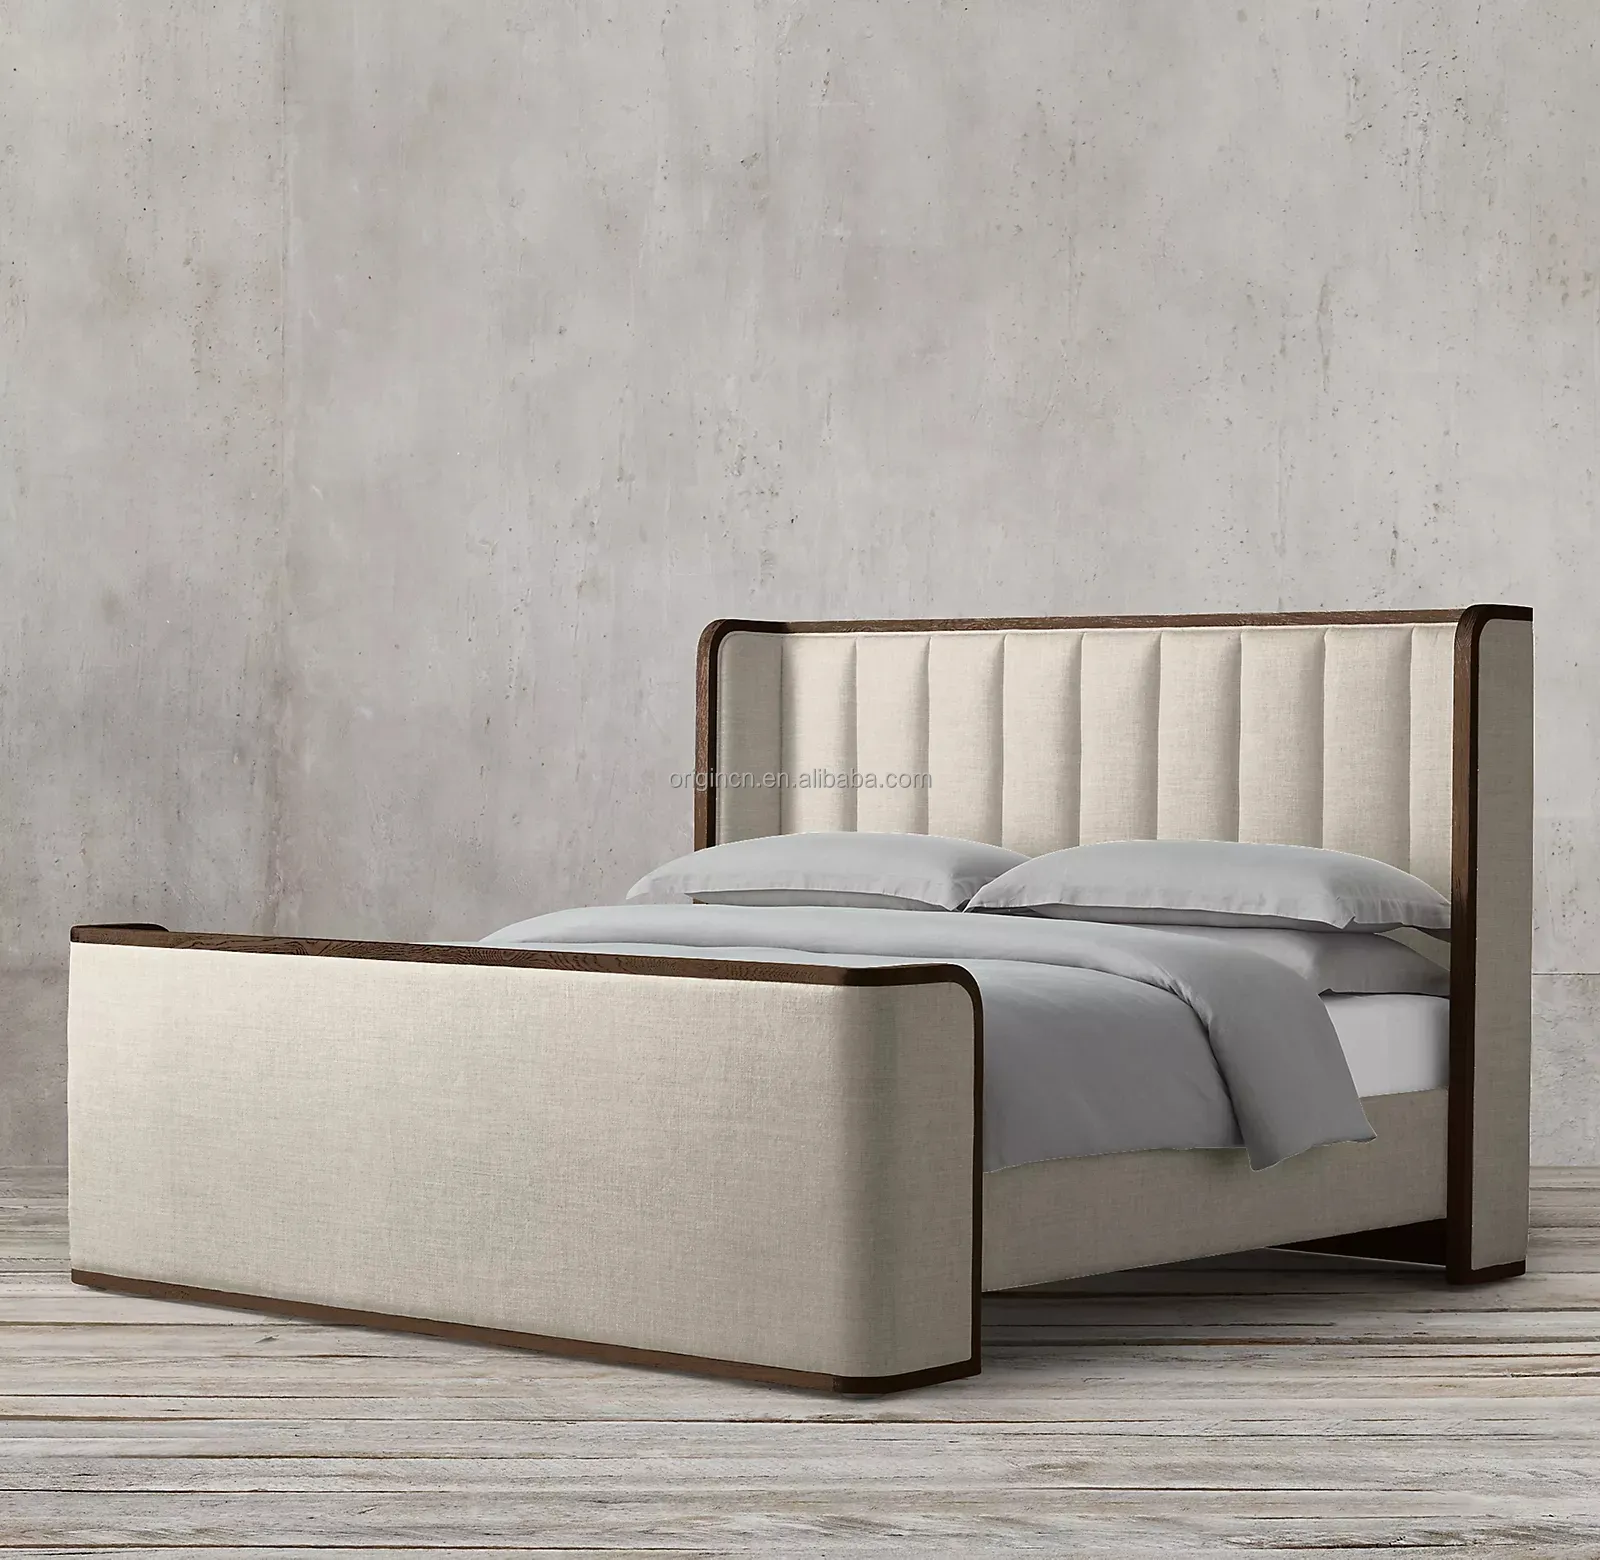 Cama de luxo romântica interior da sala de estar móveis cama king size cama de madeira sólida